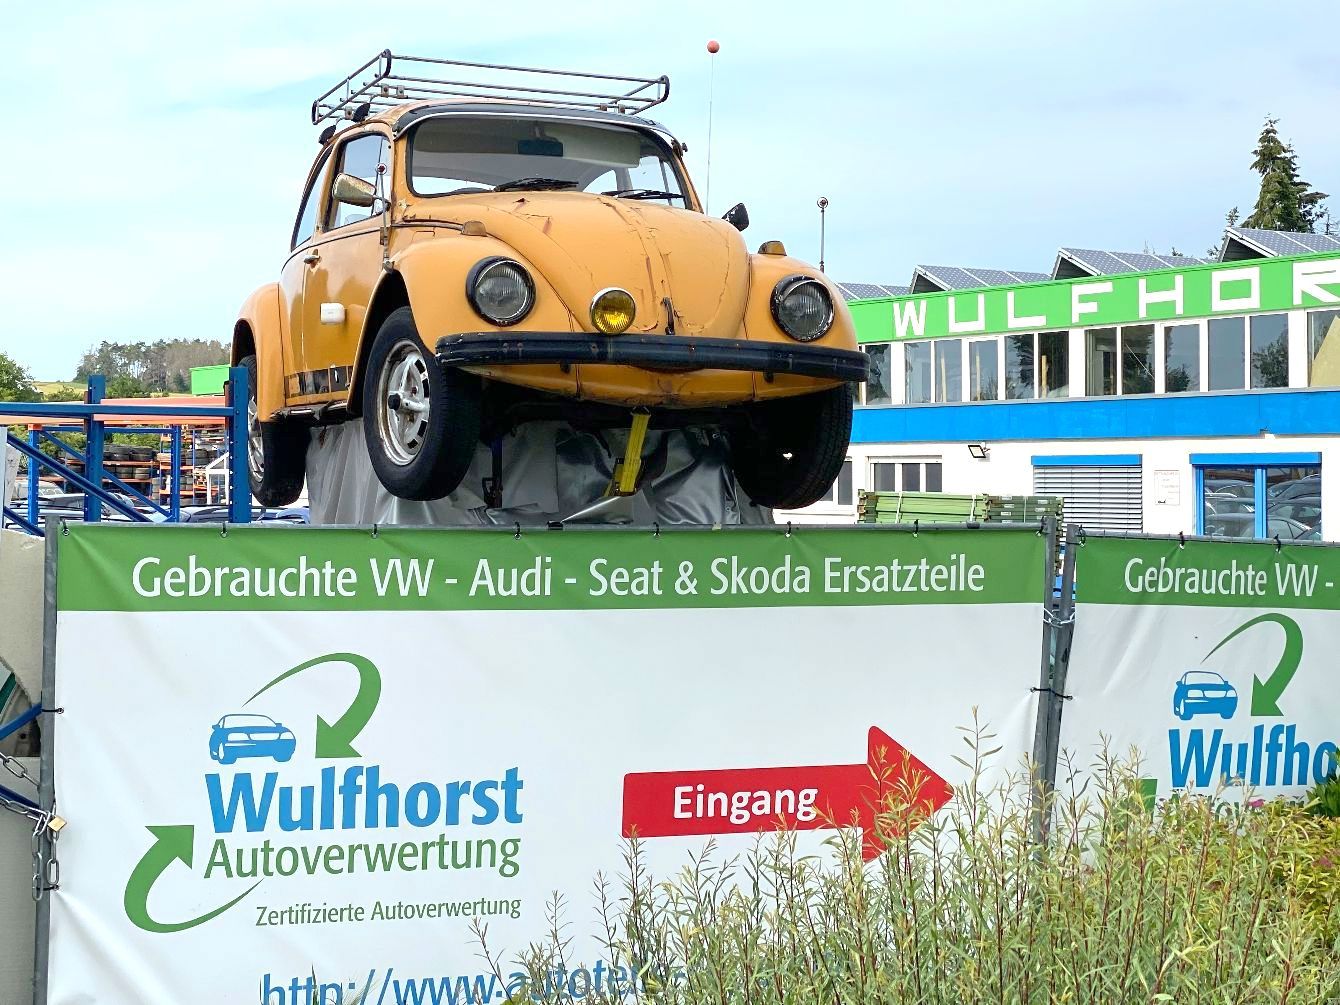 Bild 2 Wulfhorst Autoverwertung Wulfhorst in Borgentreich